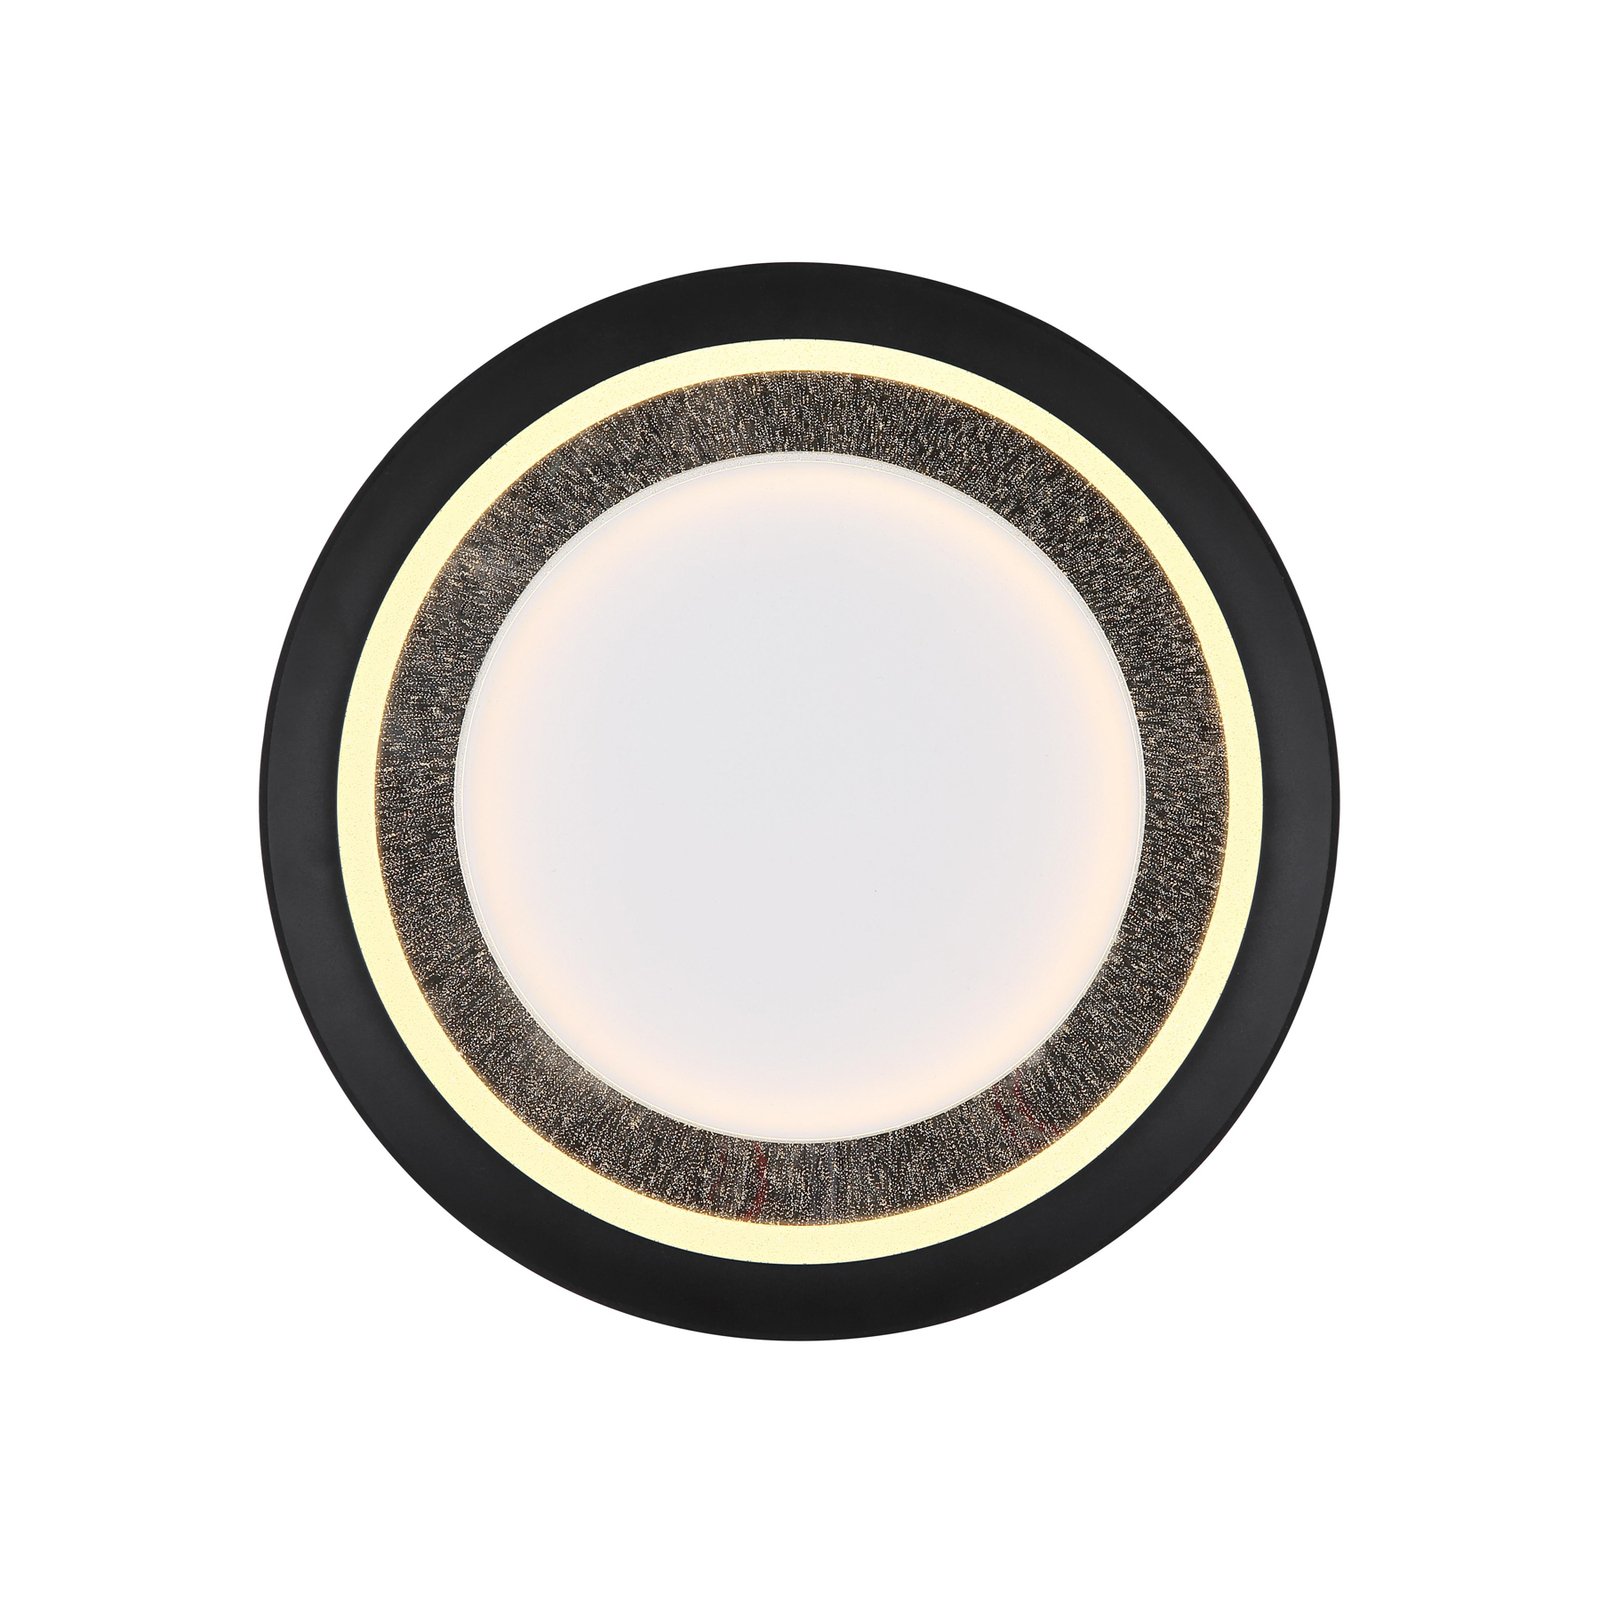 Stropní svítidlo Clarino LED, Ø 36 cm, černá/bílá, akryl